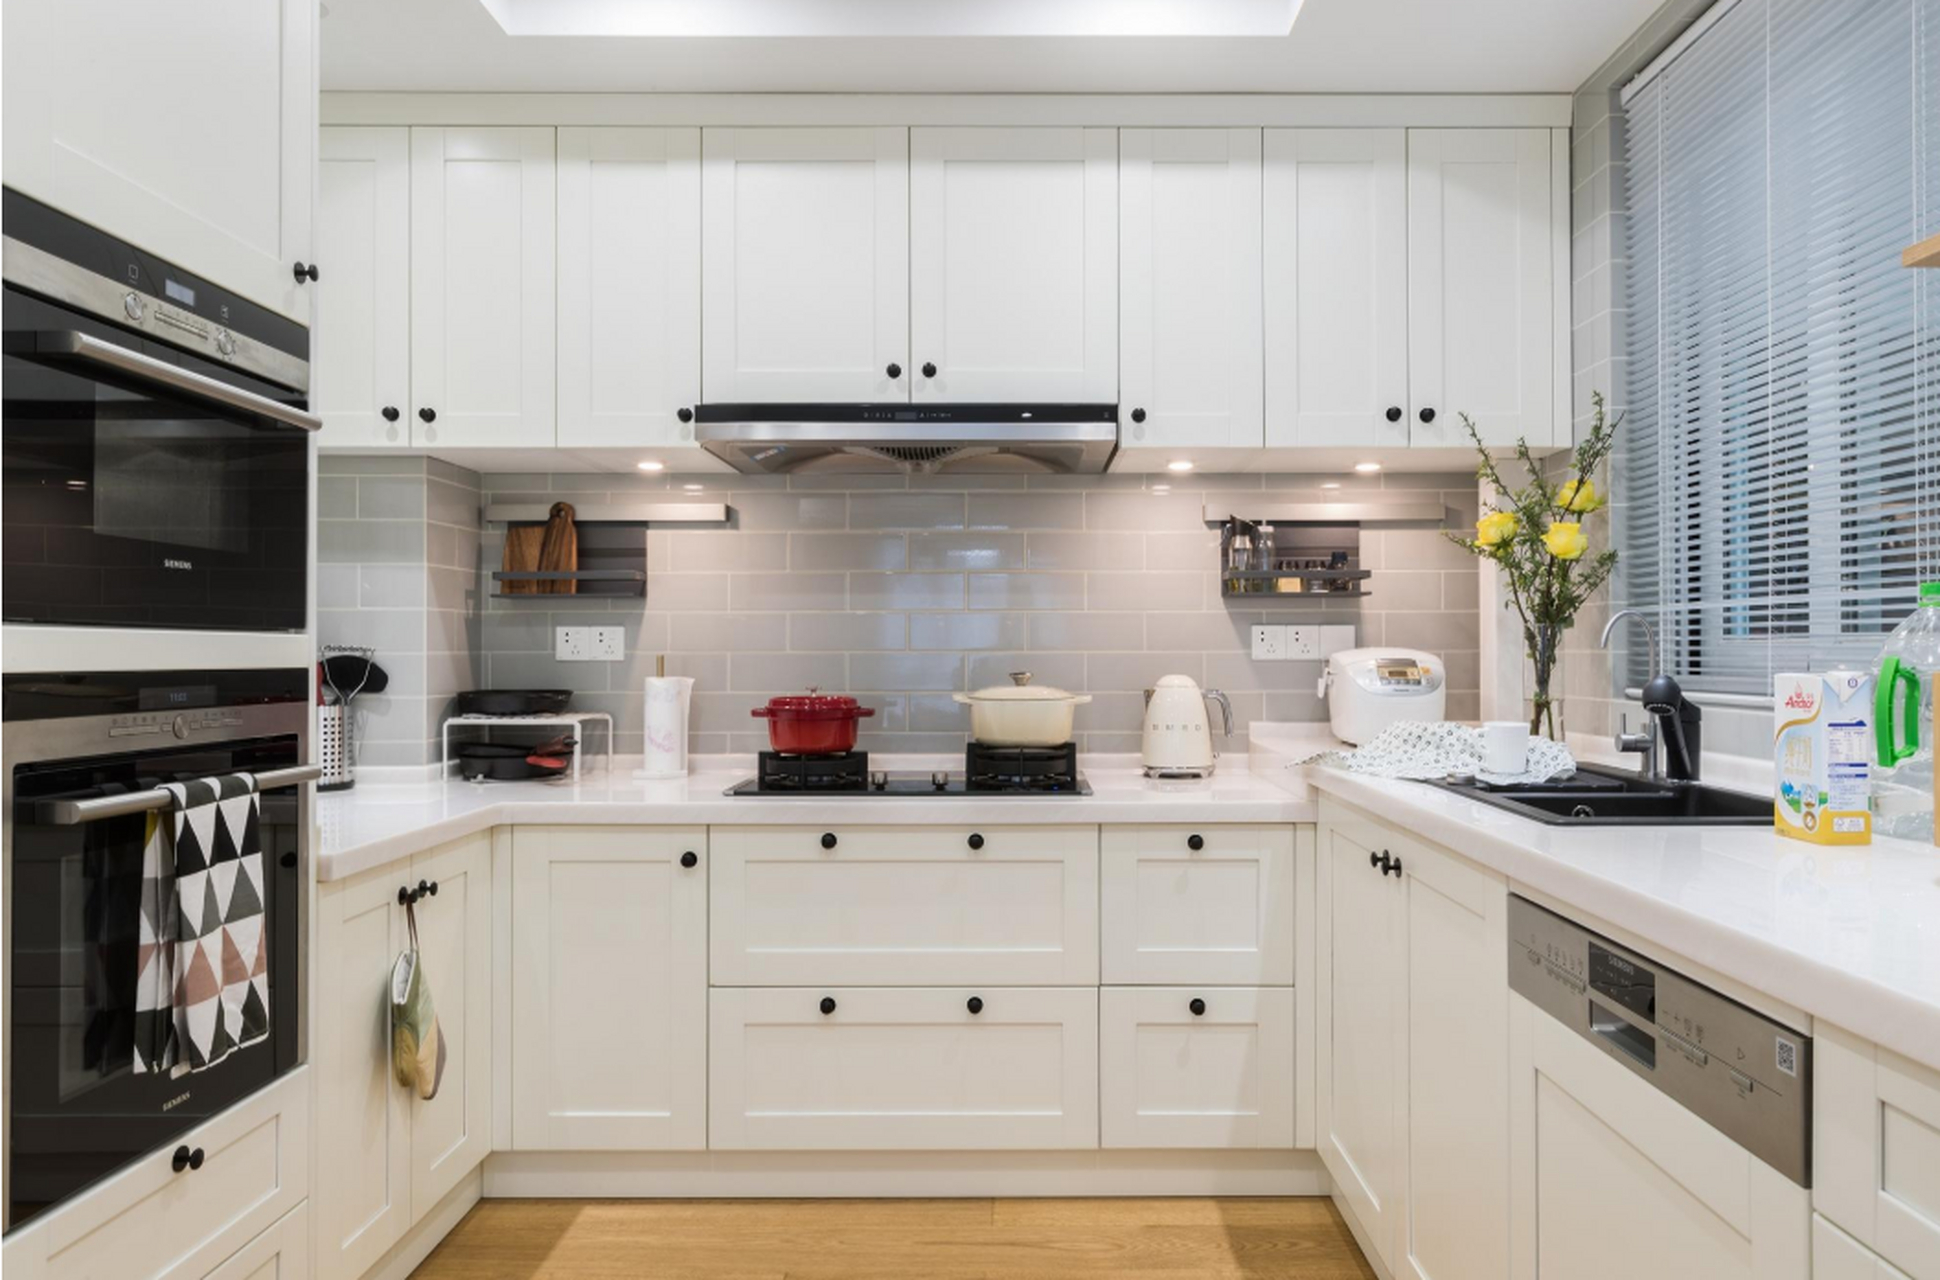 很多家庭在装修时都会考虑做简欧风,简欧风格厨房是以象牙白色为主要